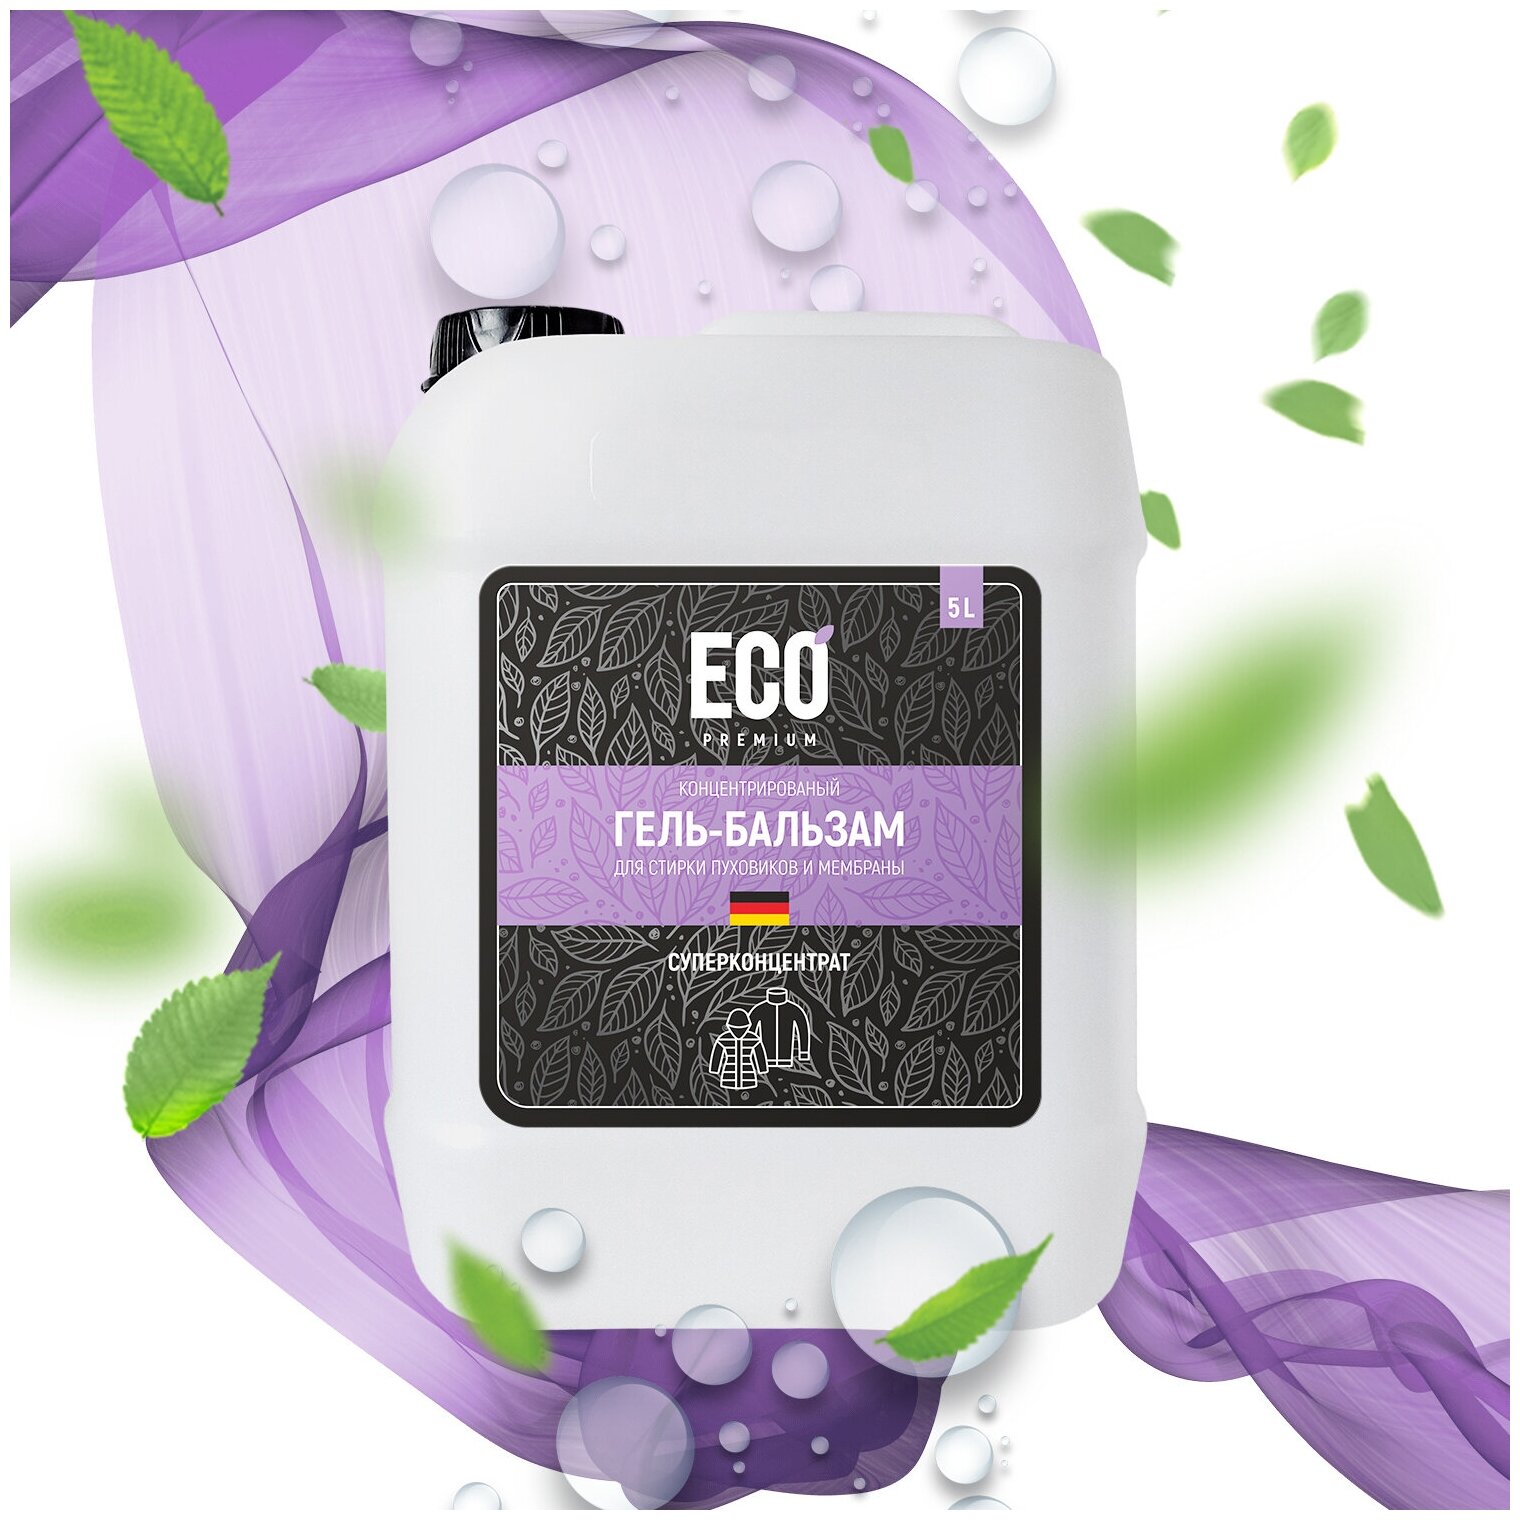 Концентрированный гель-бальзам для стирки пуховиков, спортивной одежды и мембранной ткани ECO-Premium 5л.